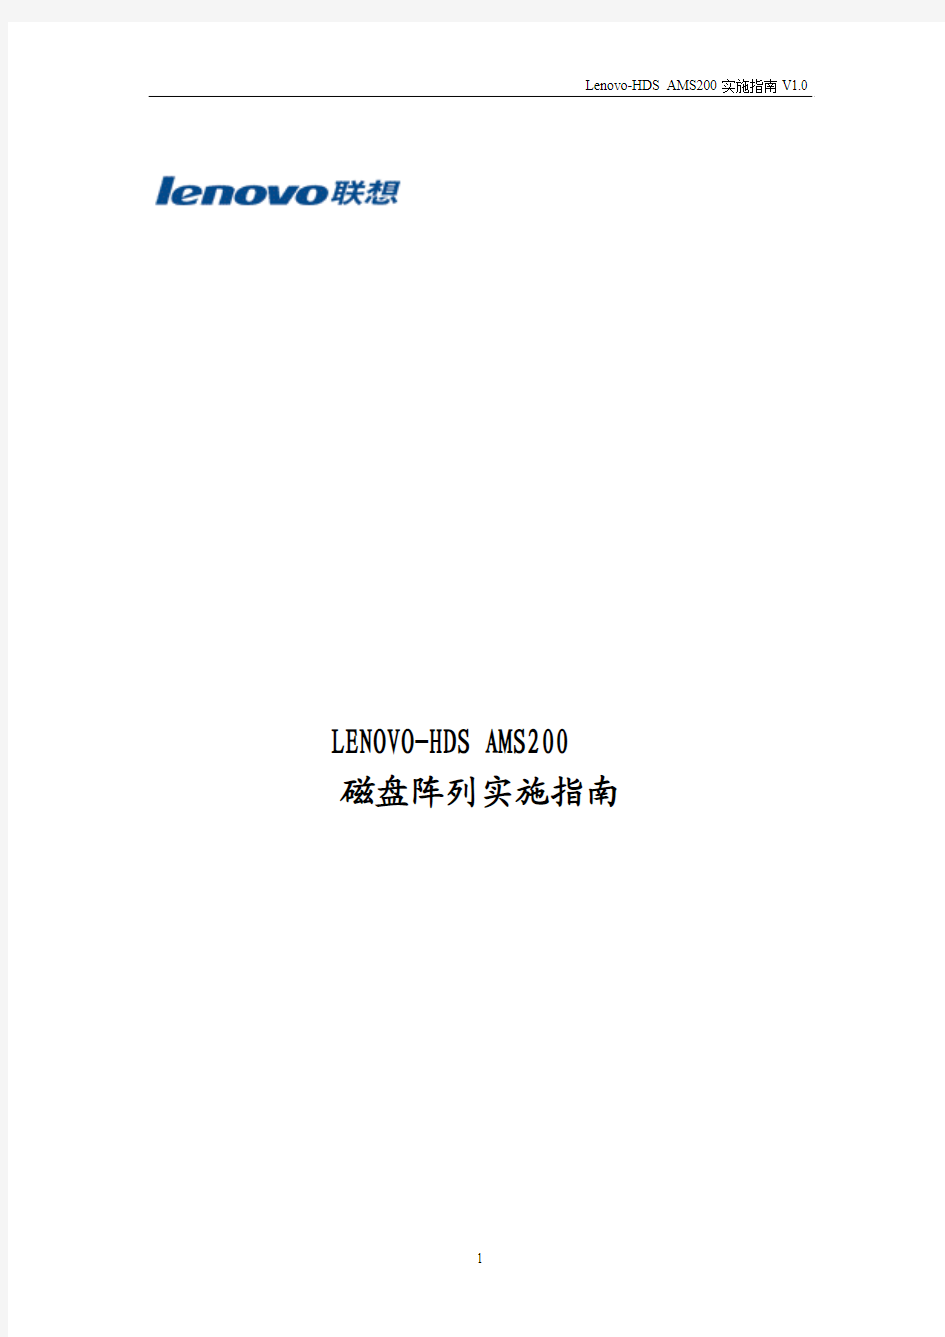 Lenovo-HDSAMS200实施指南Ver0.9